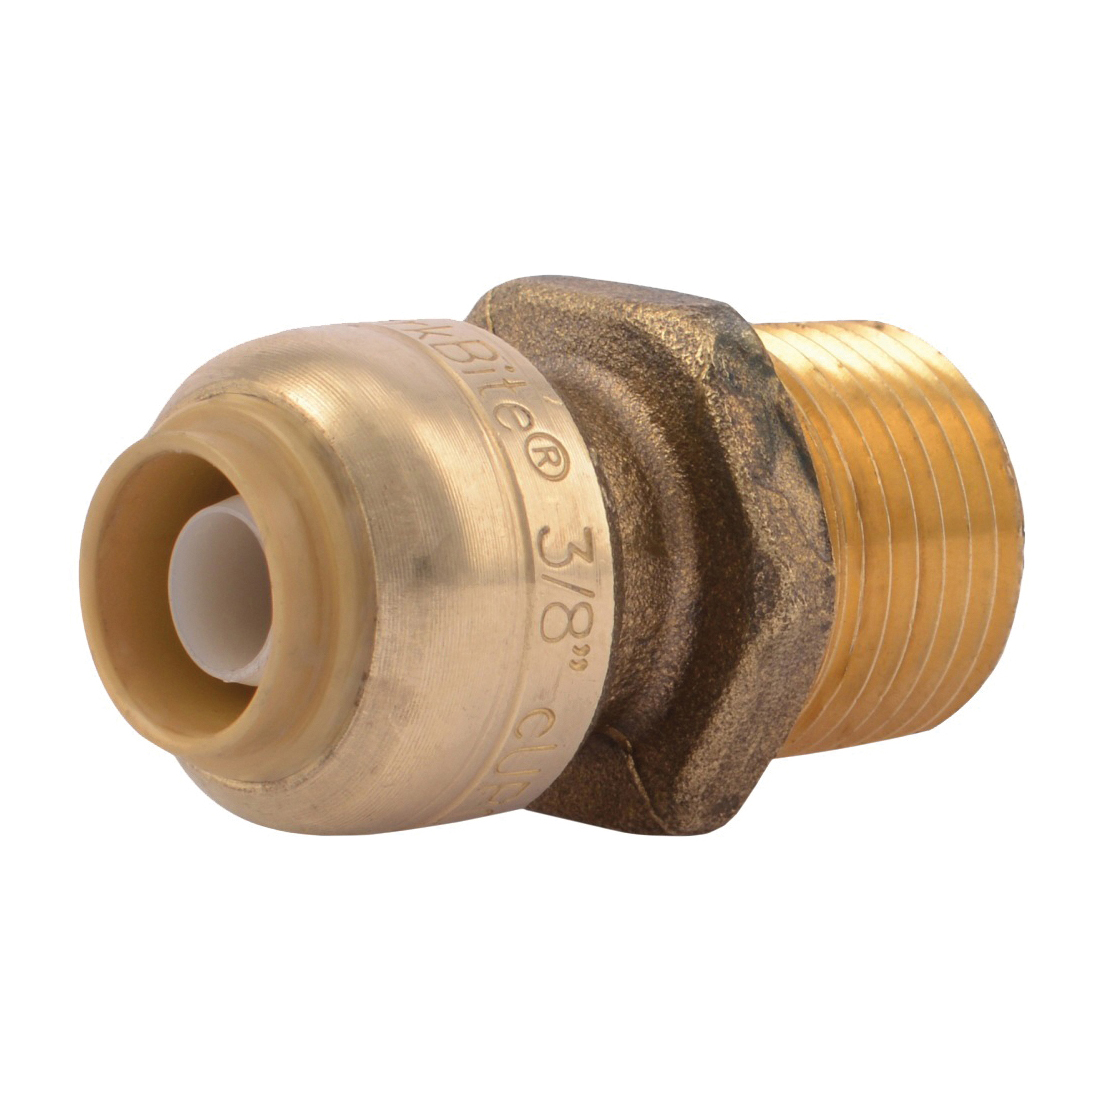 U118LFA Pipe Connector, 3/8 x 1/2 in, MNPT, Brass, 200 psi Pressure